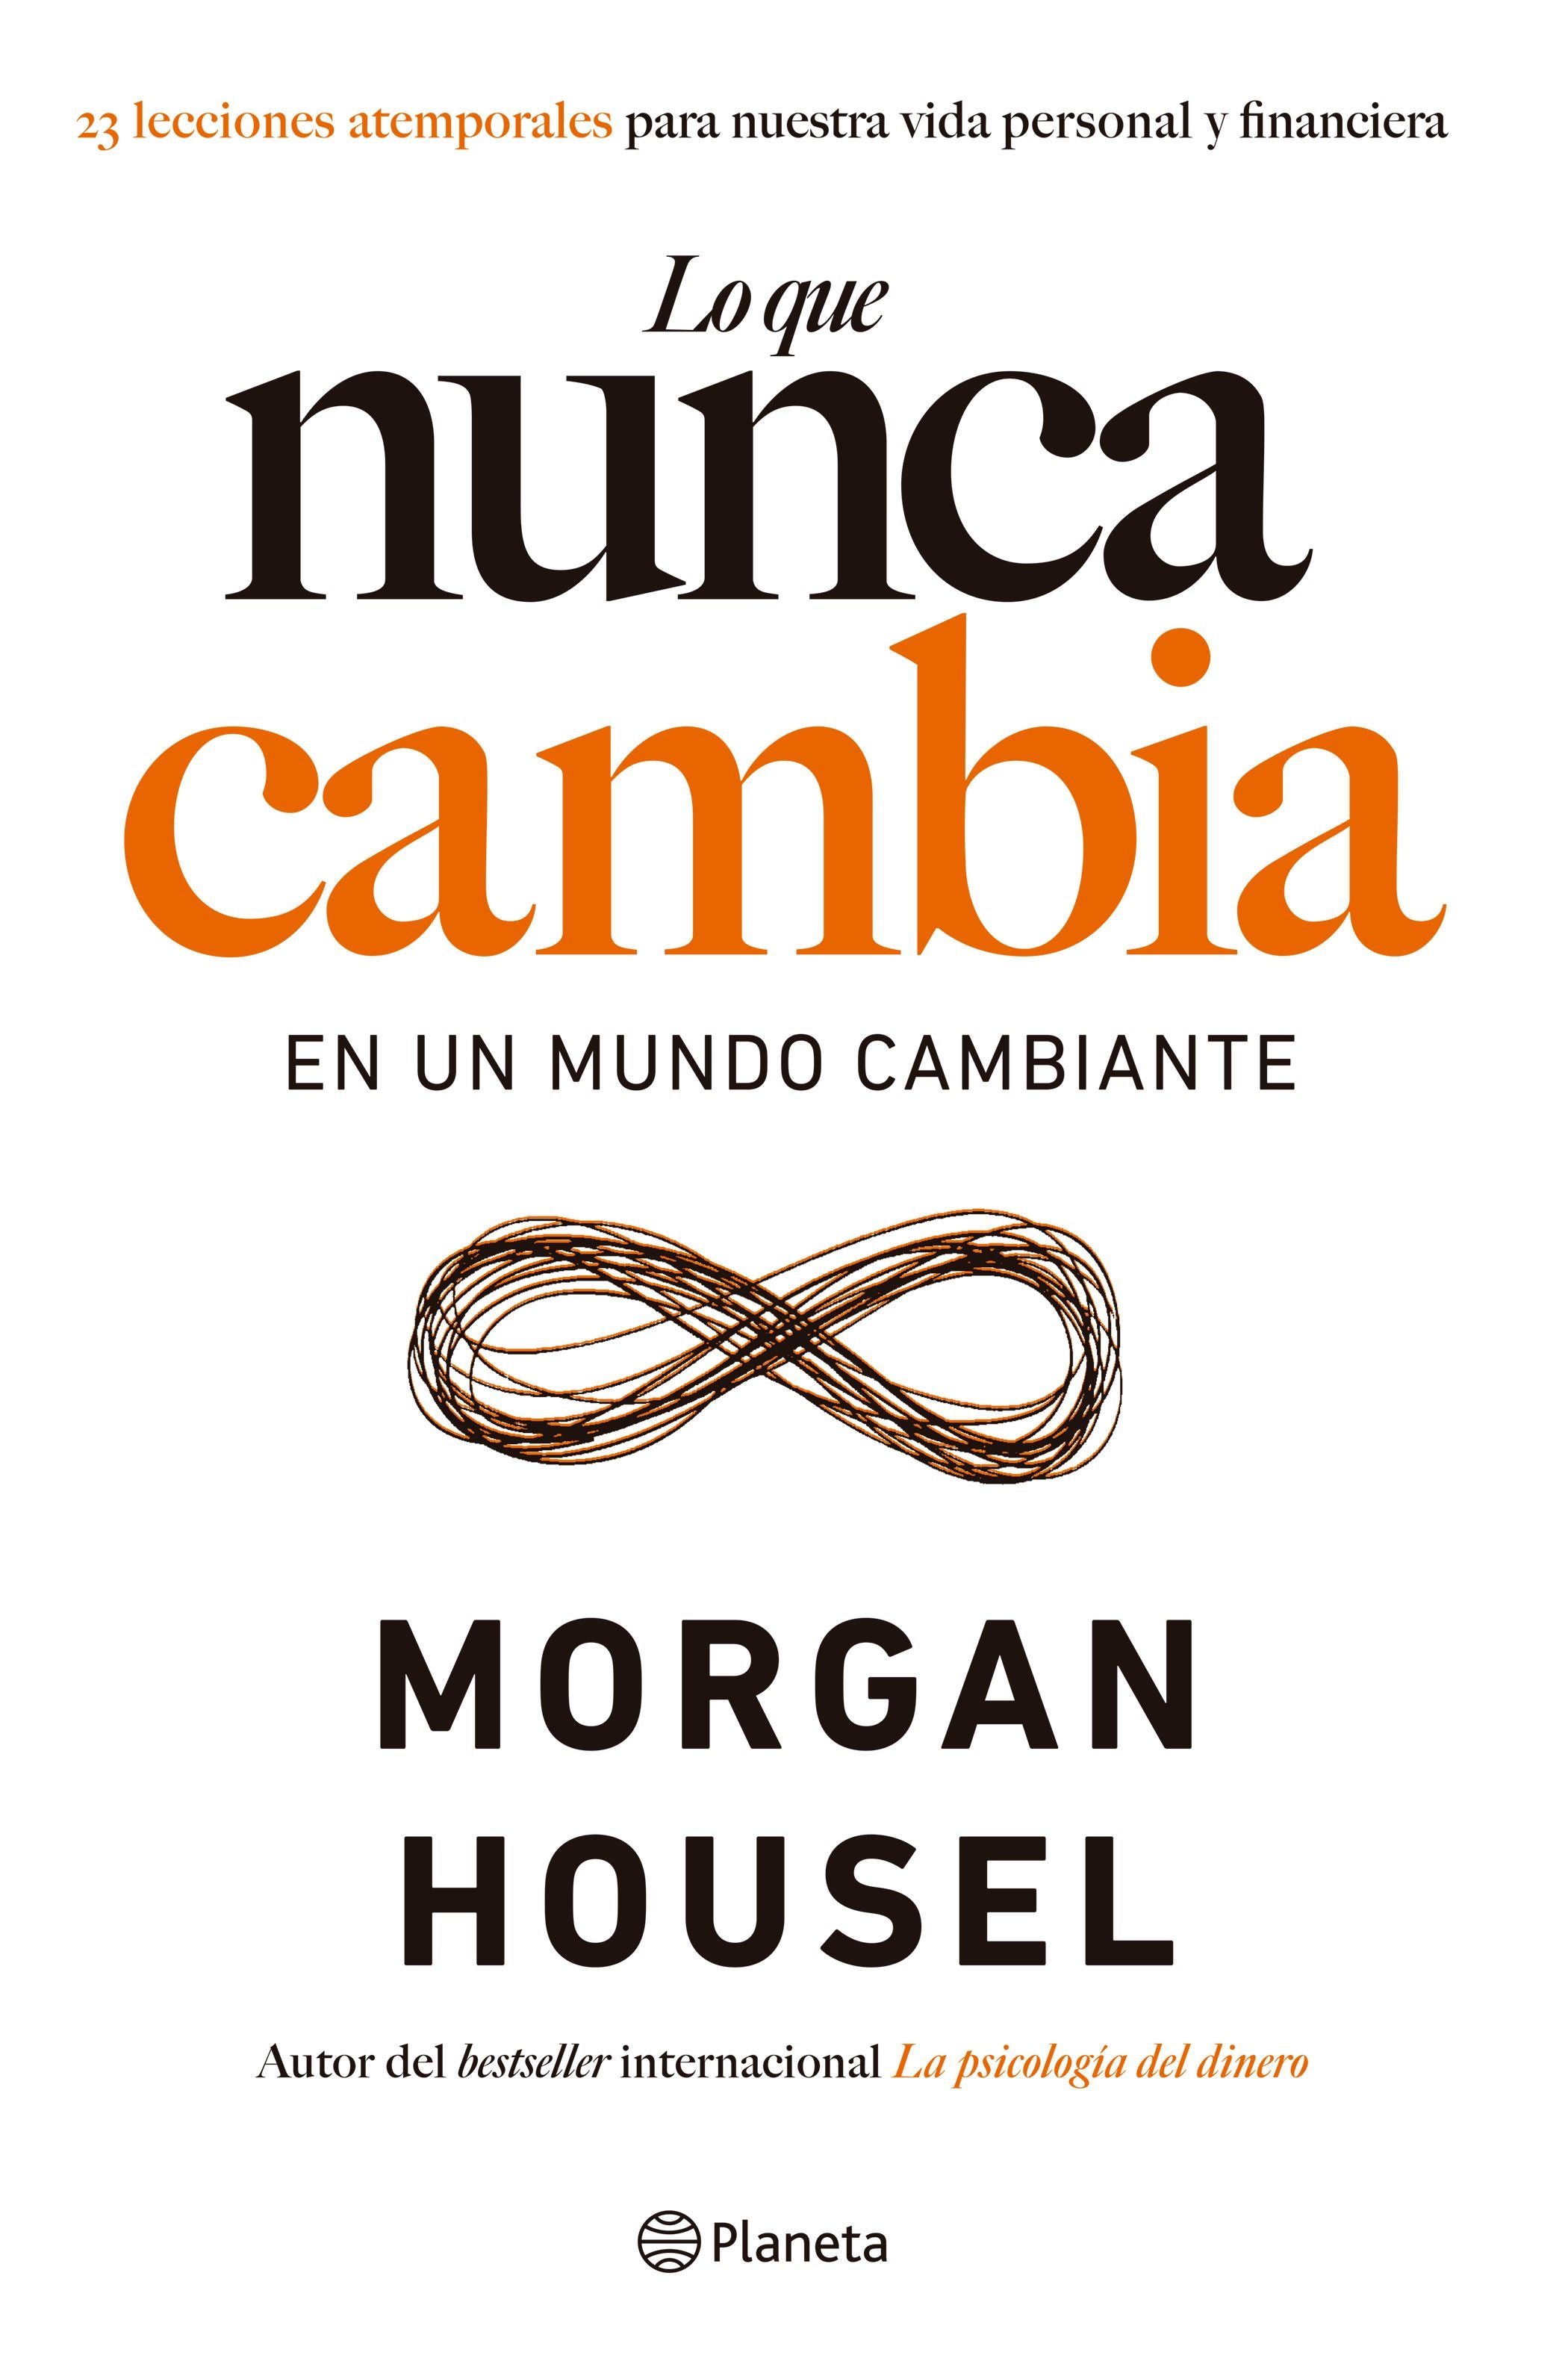 Libro Morgan Housel - Lo que nunca cambia